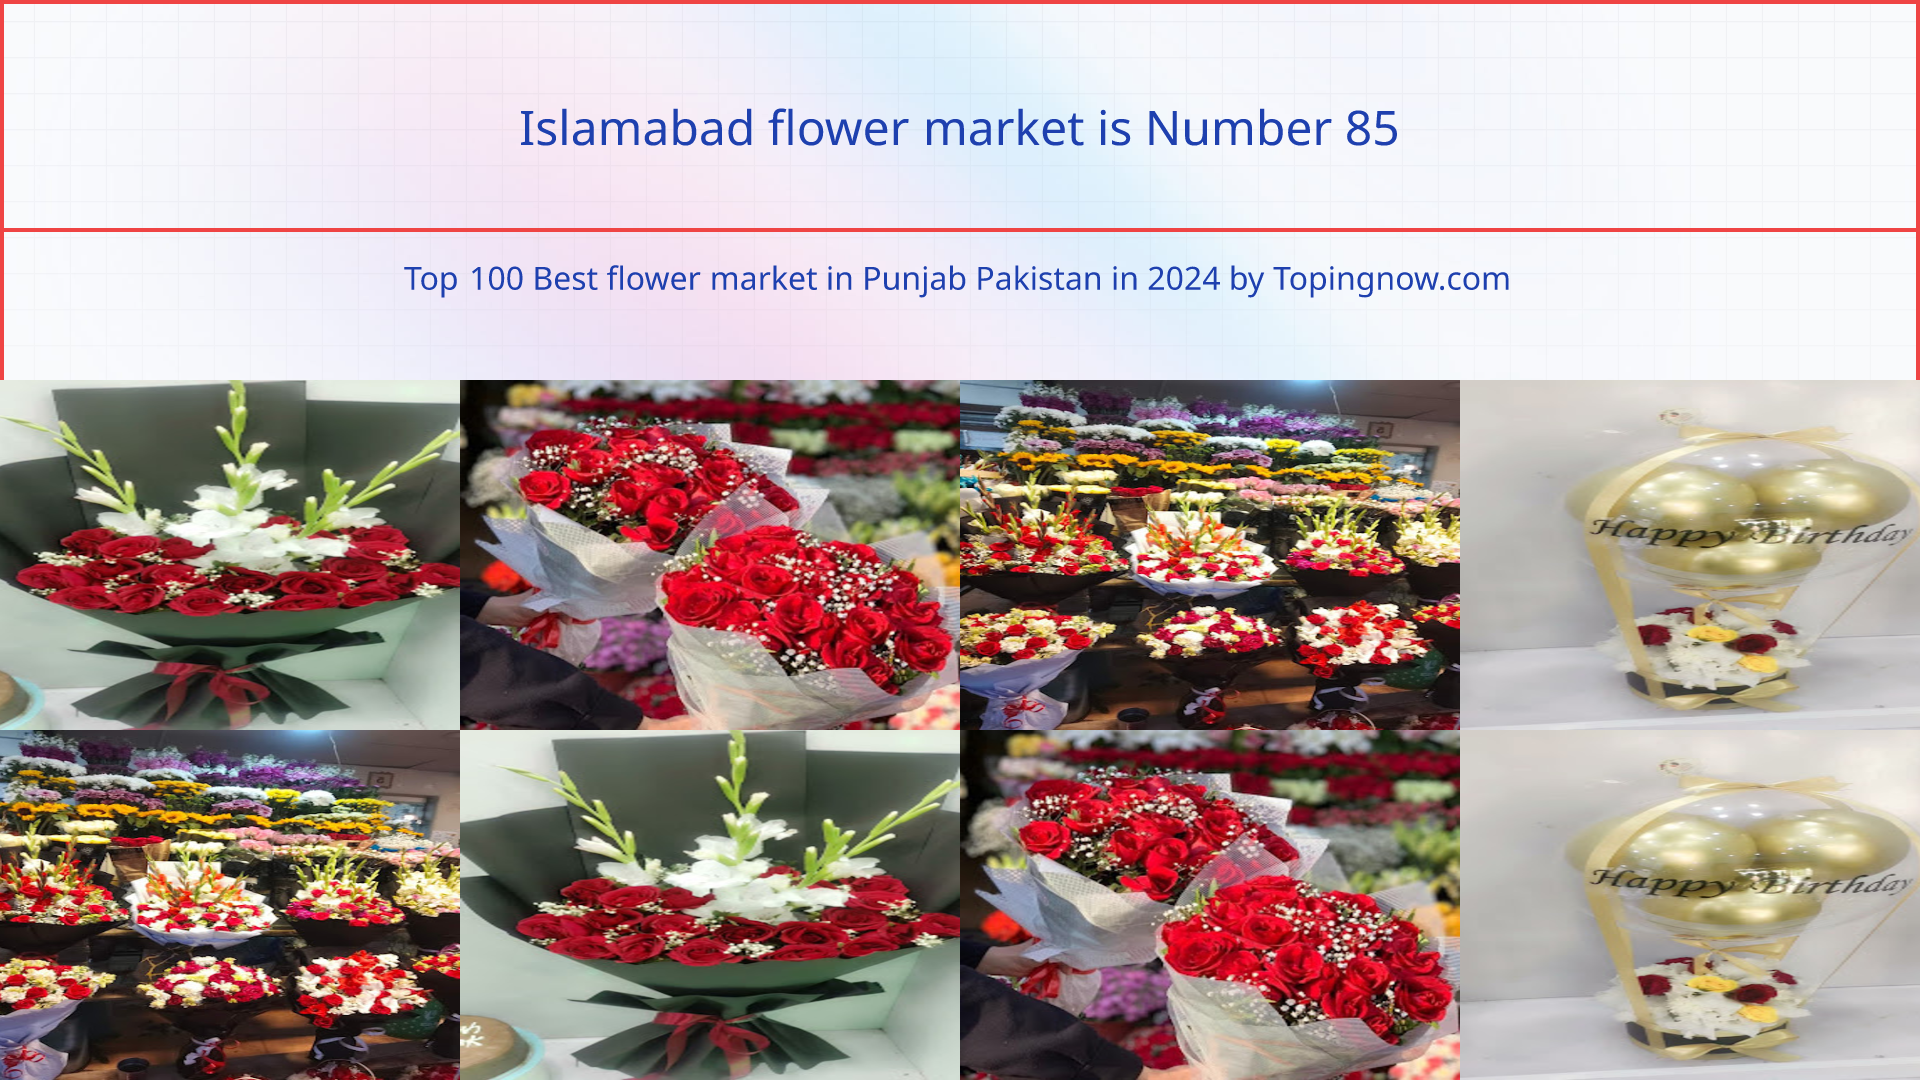 Islamabad flower market: Top 100 Best flower market in Punjab Pakistan in 2024